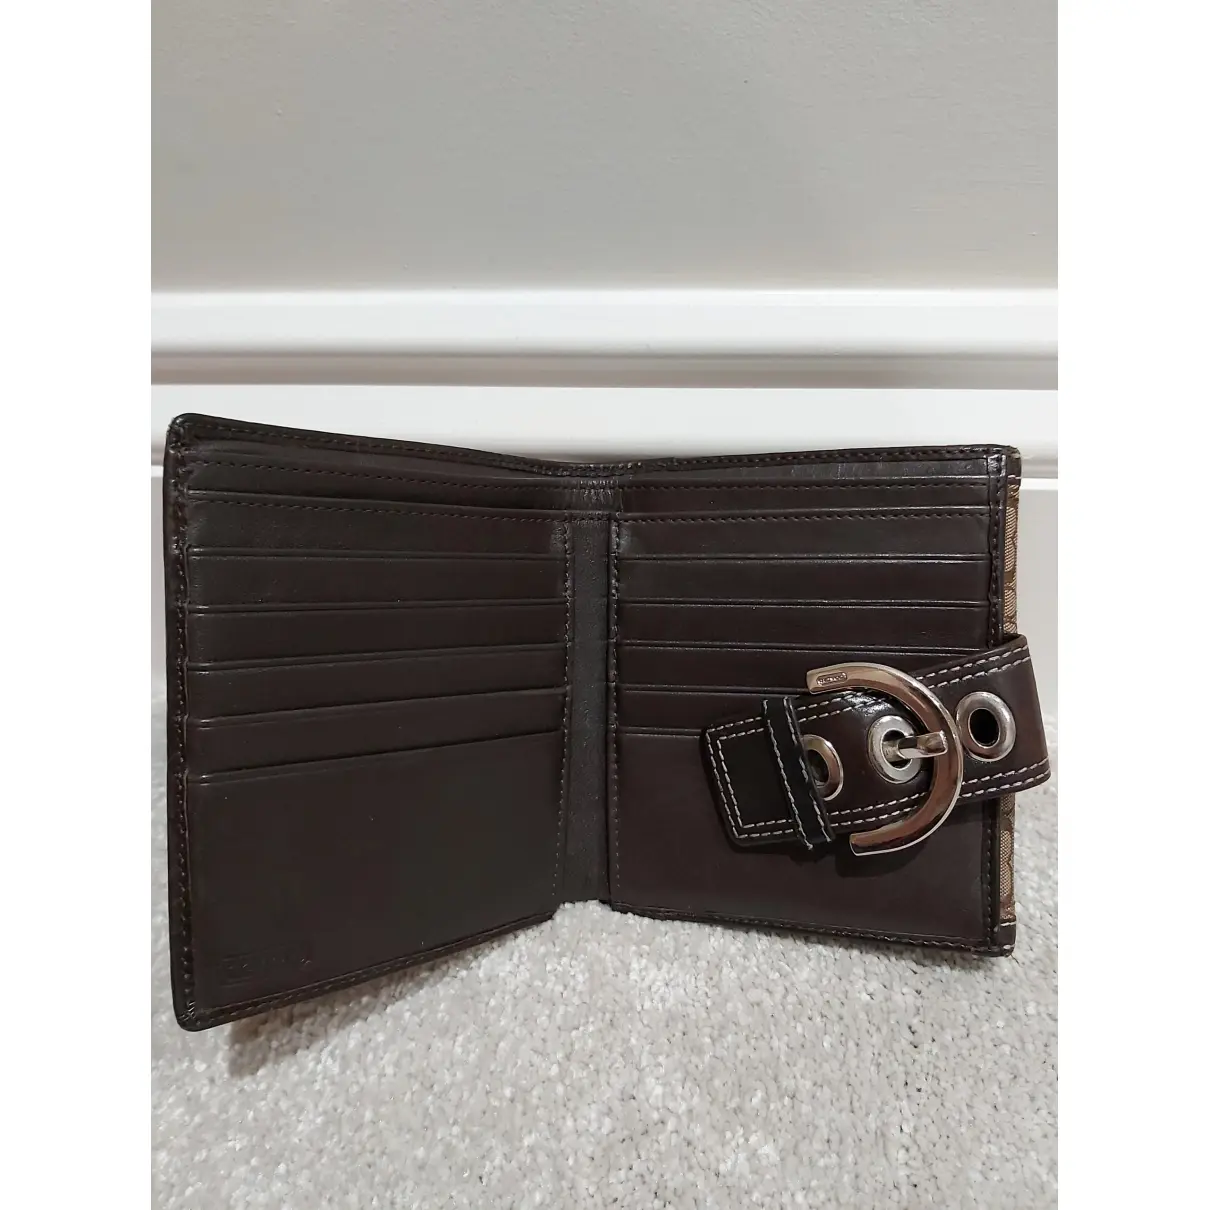 Cloth wallet Coach - Vintage